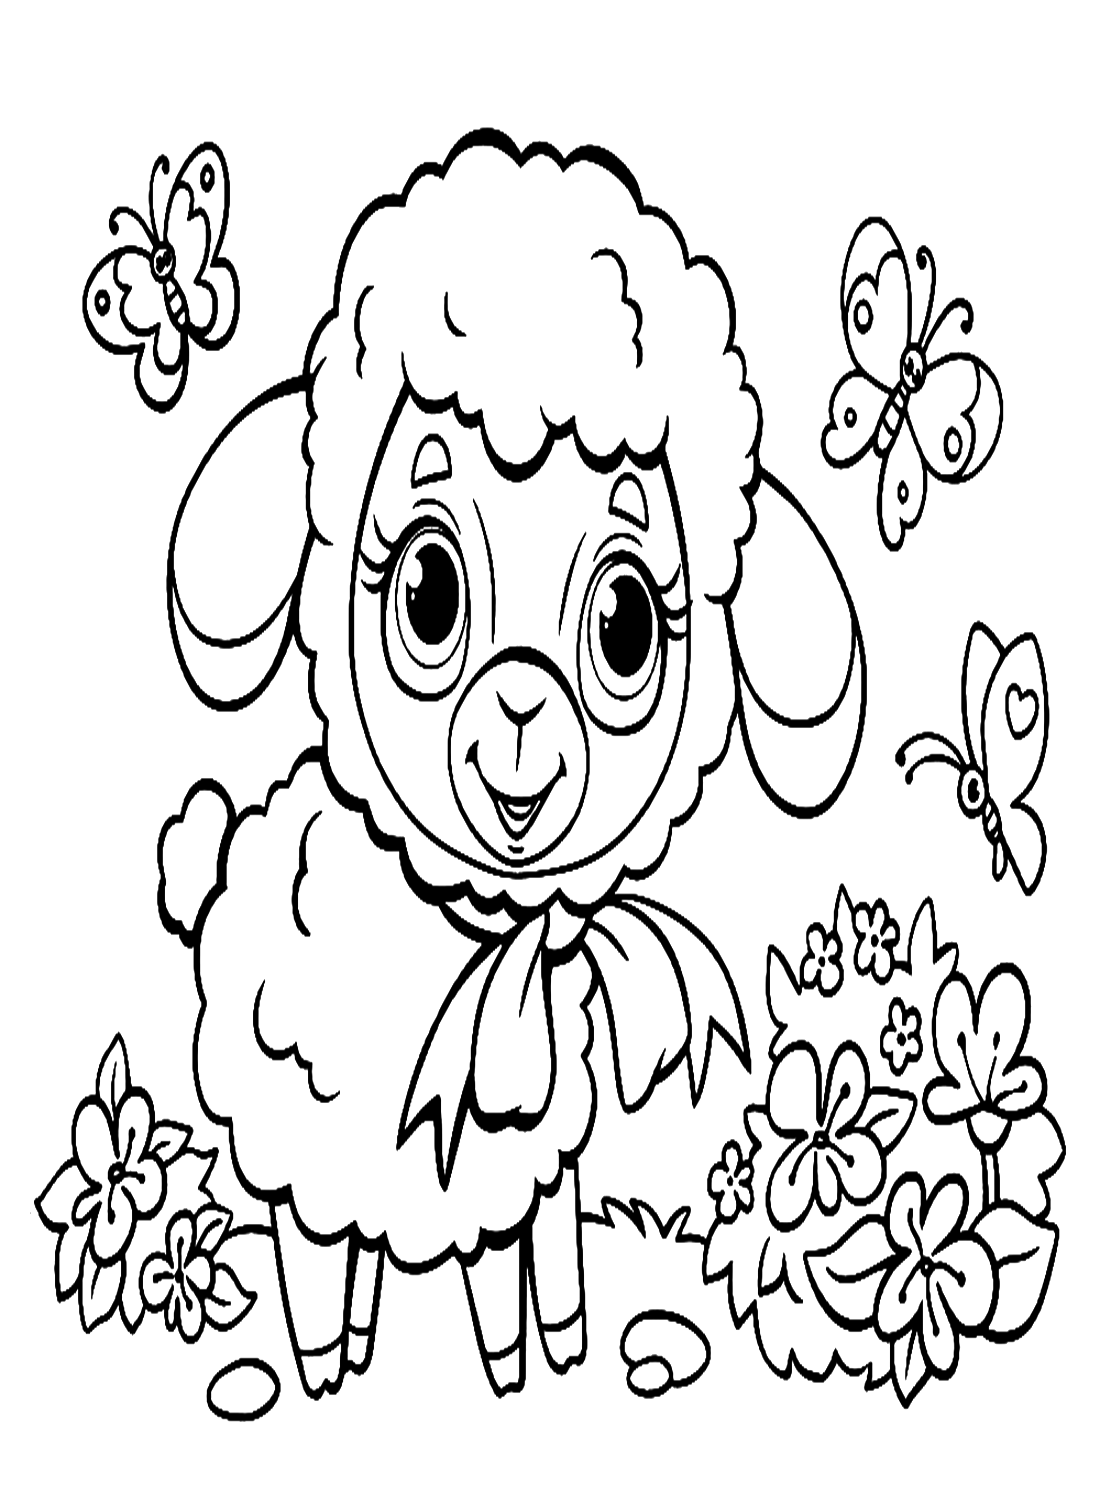 可爱的小羊羔被羔羊的蝴蝶包围